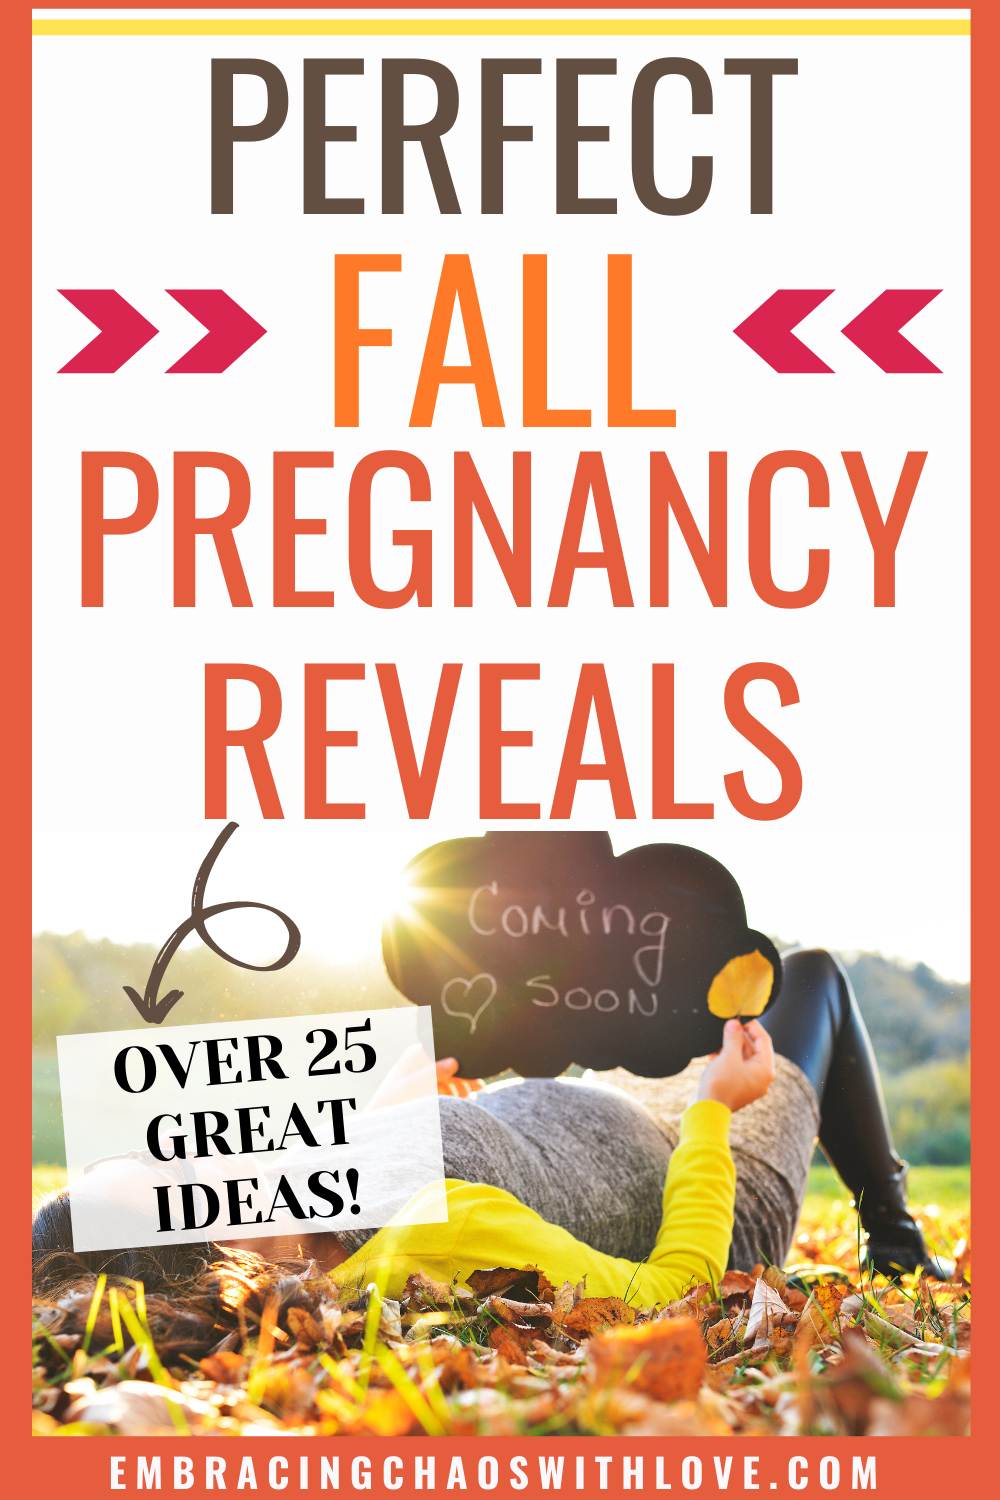 Cute and Festive Fall Pregnancy Announcement Ideas